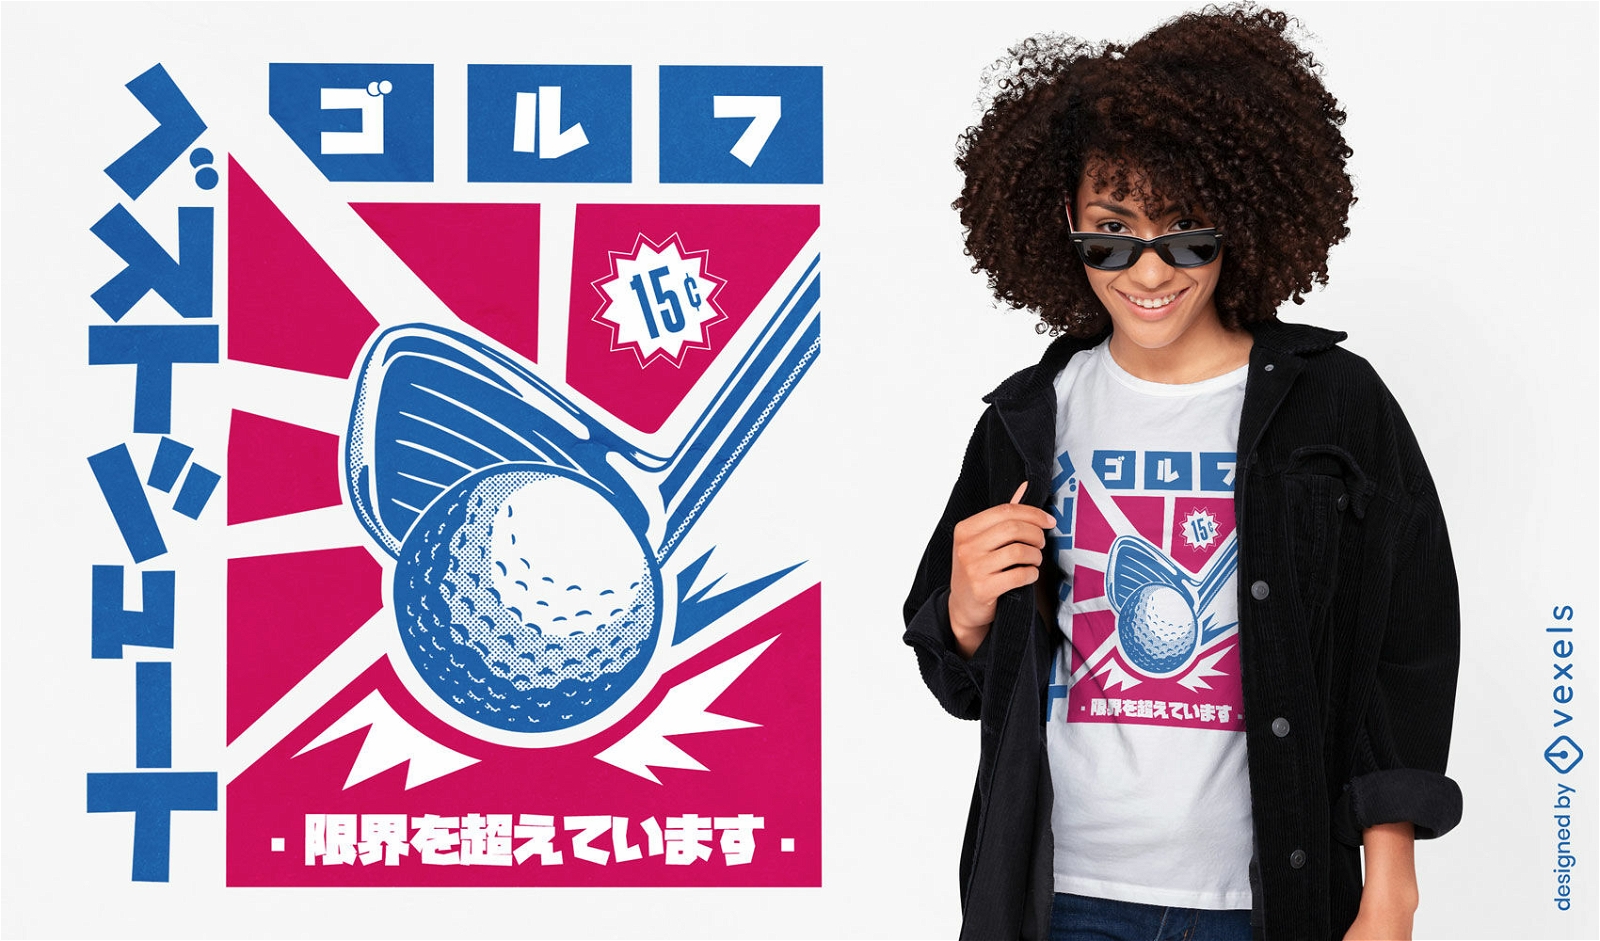 Dise?o de camiseta de p?ster de golf japon?s.